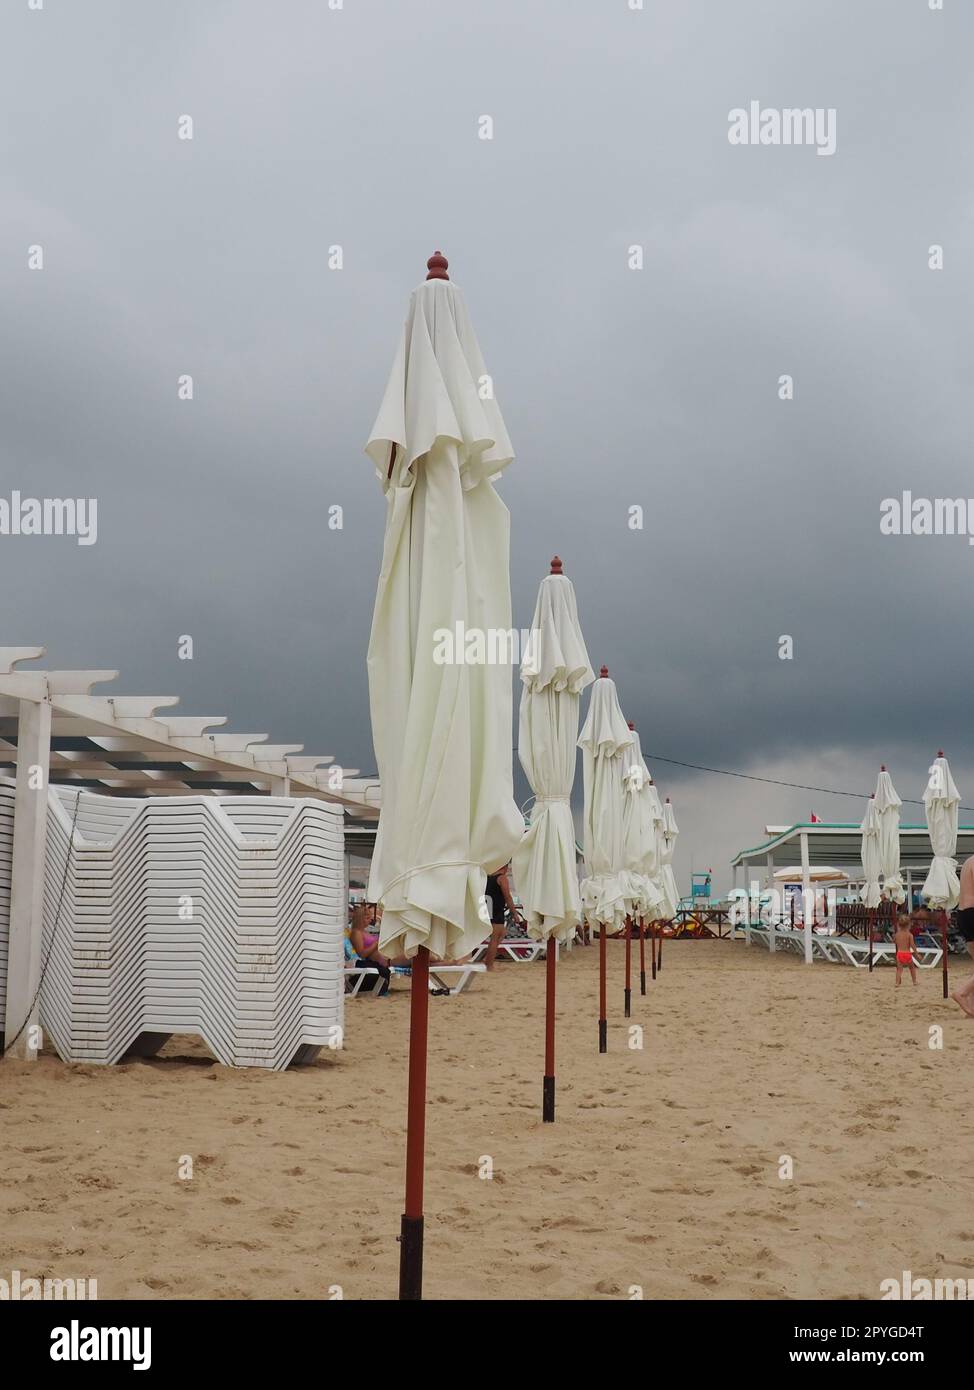 Transats humides et parasols sur la plage de la mer pendant la tempête de pluie forte. Parasol roulé sur la plage contre le ciel nuageux sombre. Invasion d'un typhon, d'un cyclone ou d'une tempête sur la mer ou l'océan. Saison de plage Banque D'Images